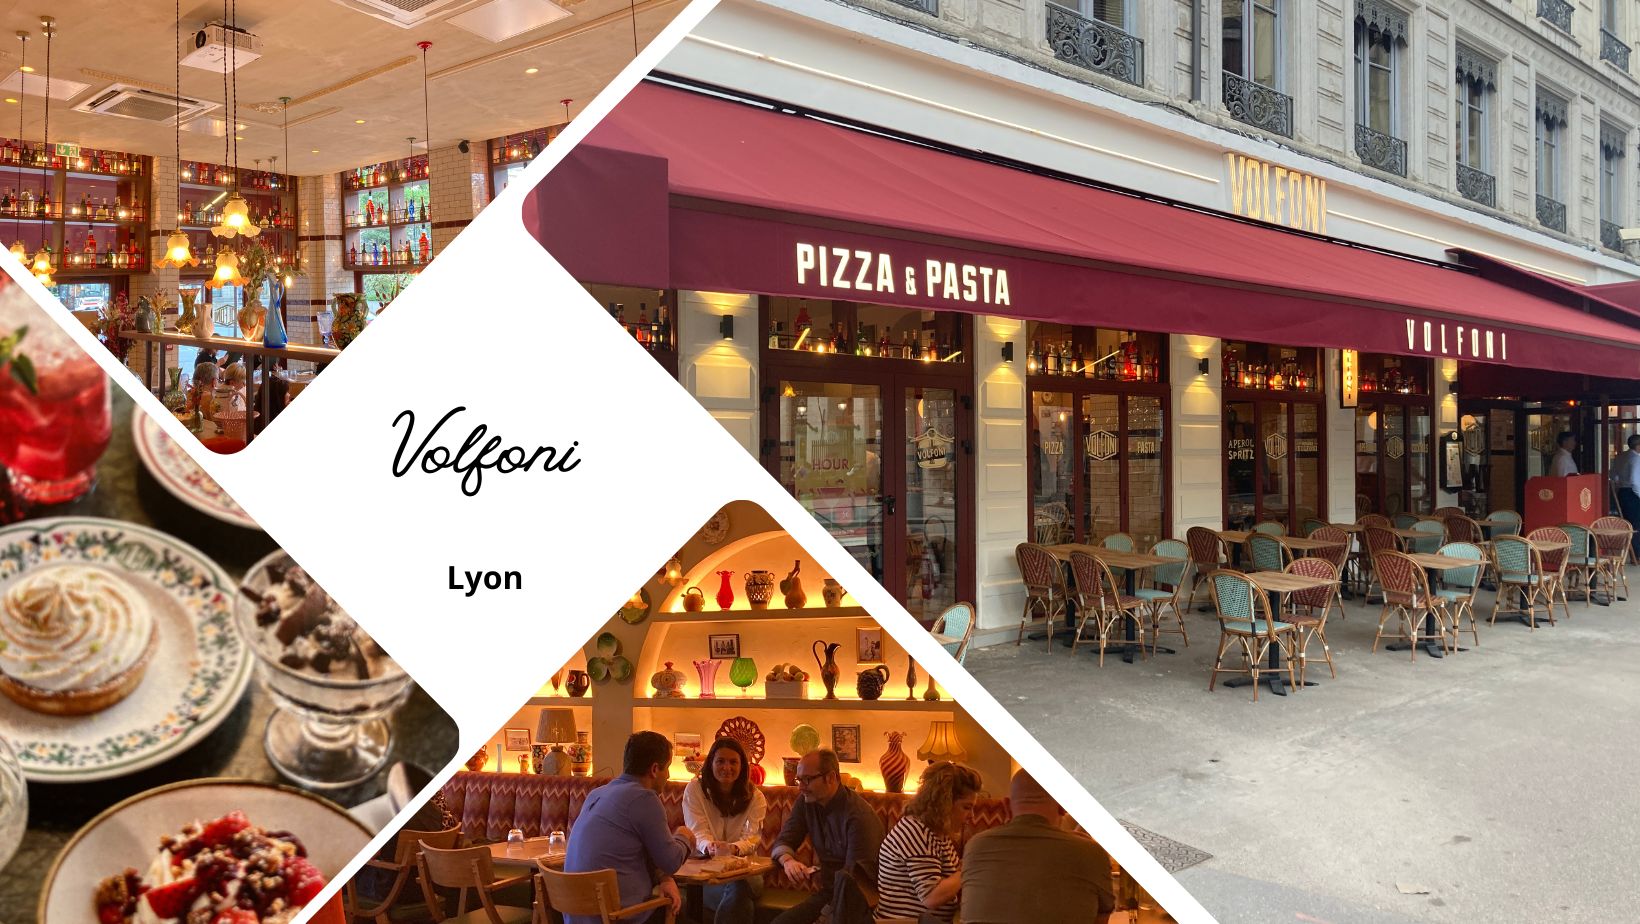 Volfoni Lyon, le nouveau restaurant italien à côté de la place Bellecour